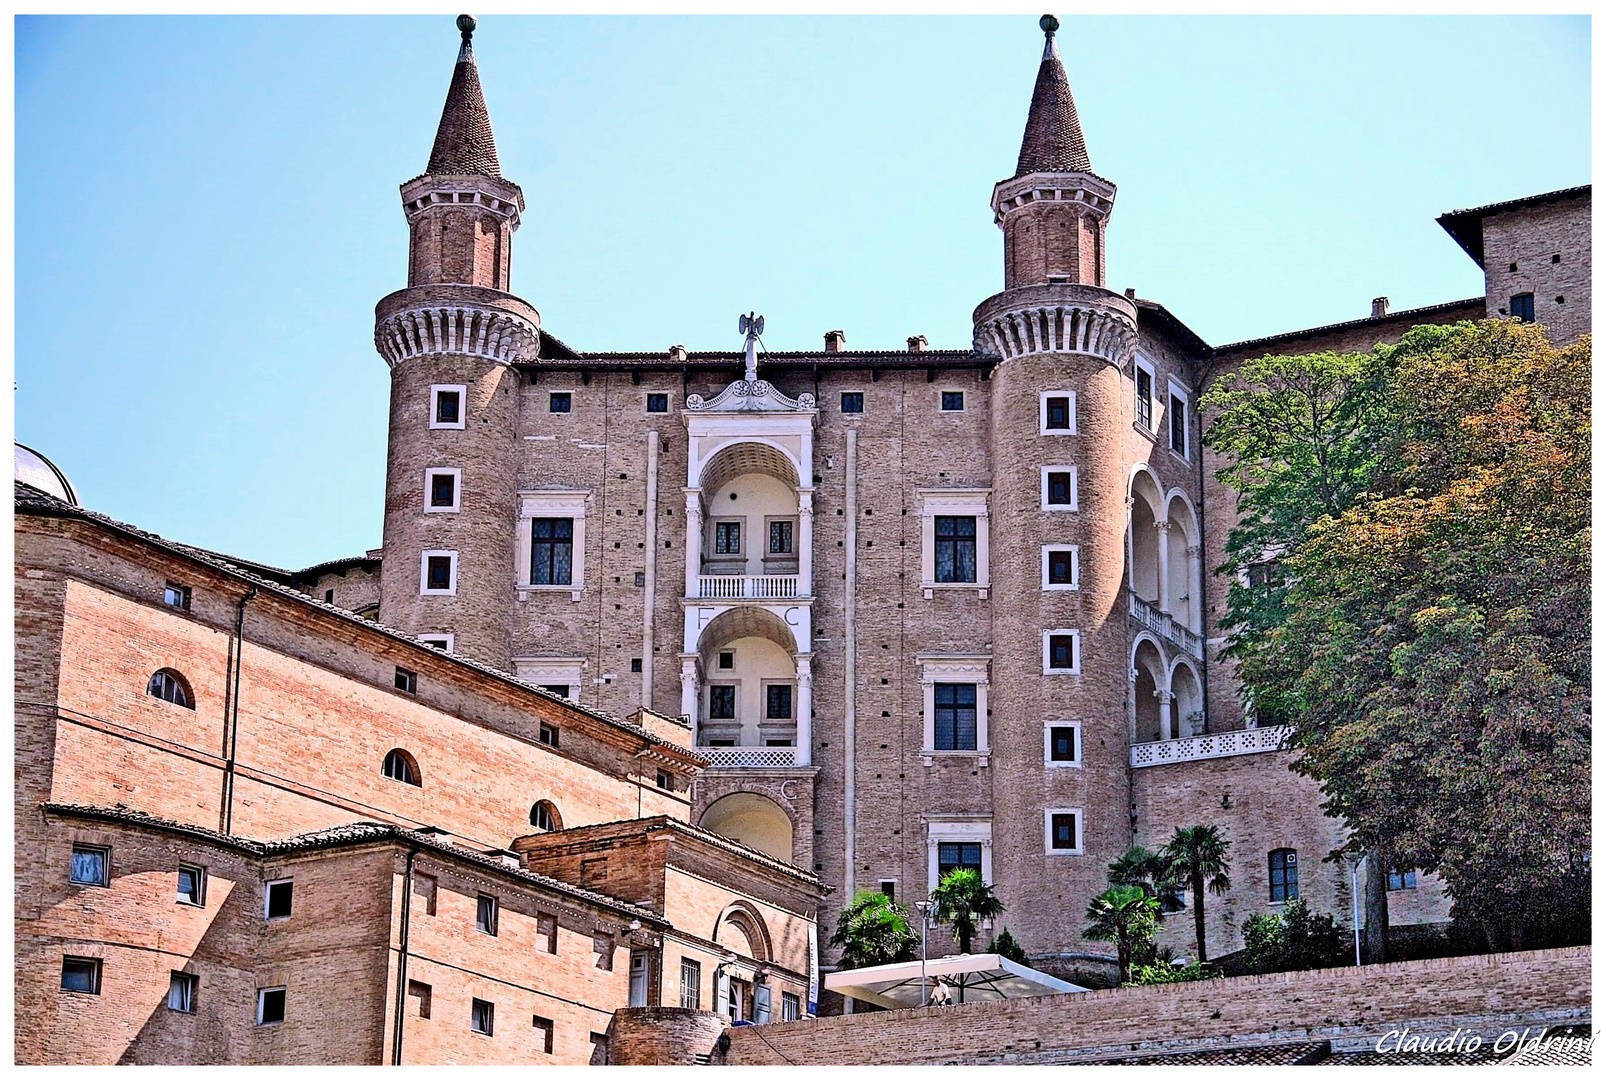 Palazzo ducale in Urbino,facade of turrets